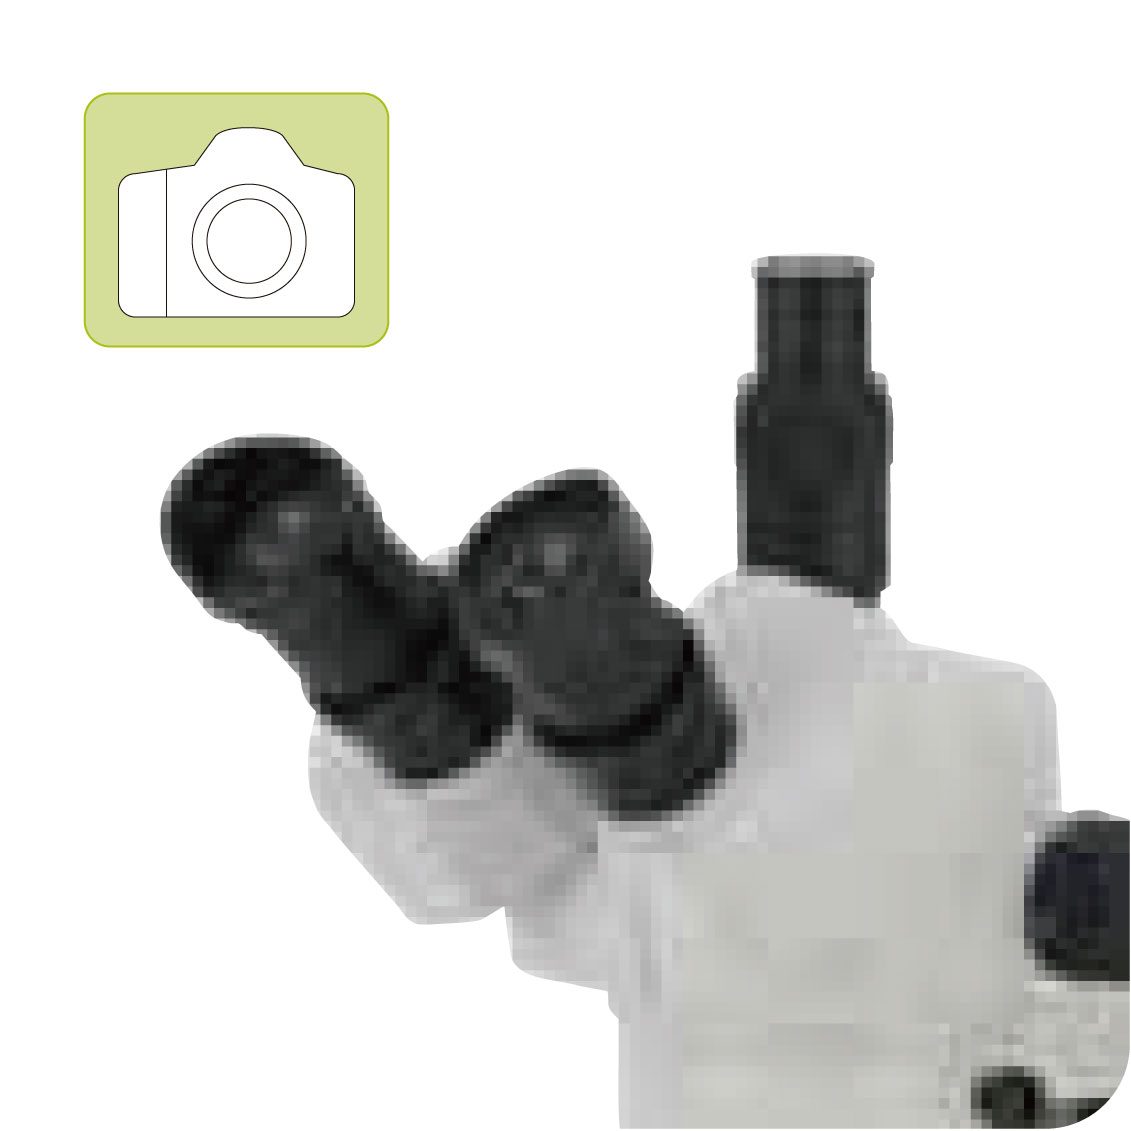 カートン光学 ズームシステム実体顕微鏡<三眼式>